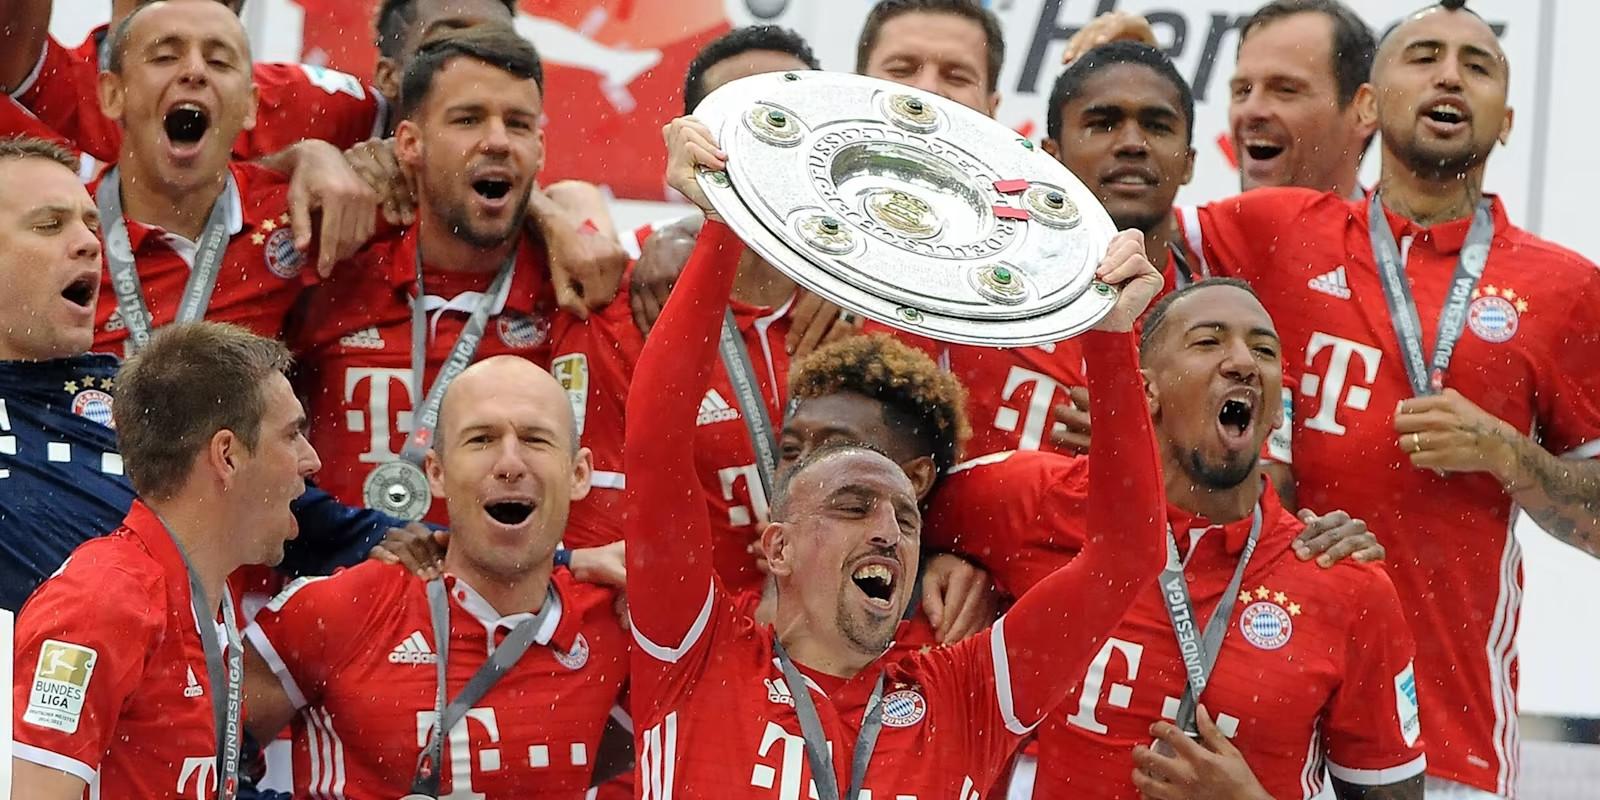 Câu chuyện về kỷ lục 11 năm vô địch Bundesliga của Bayern Munich 455008